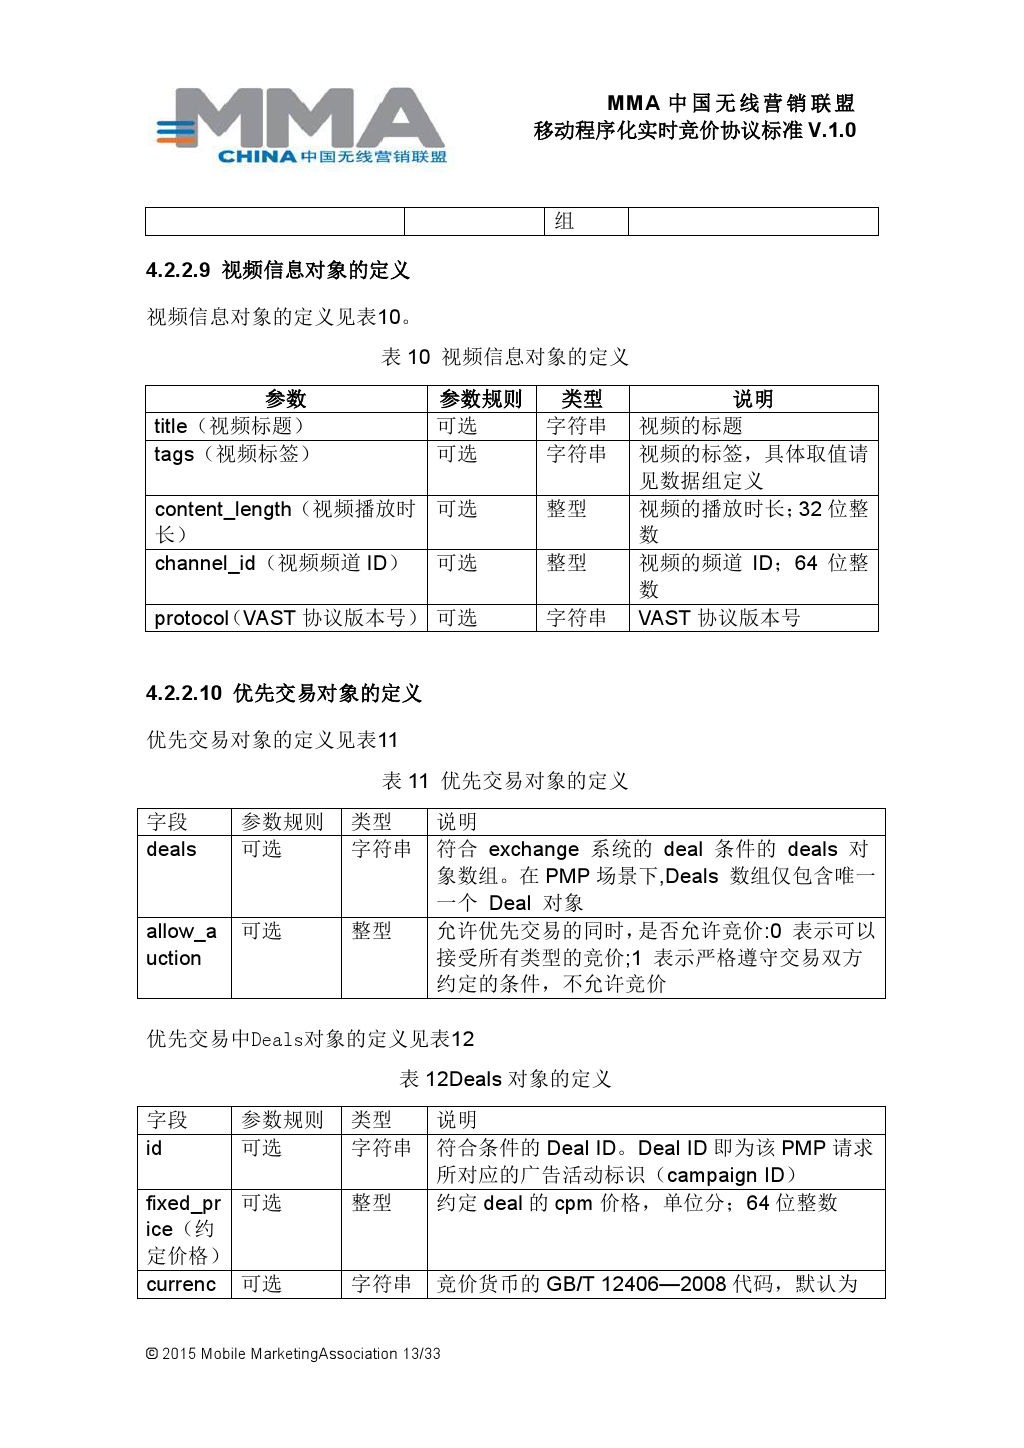 MMA中国无线营销联盟移动程序化实时竞价协议标准V.1.0_000014